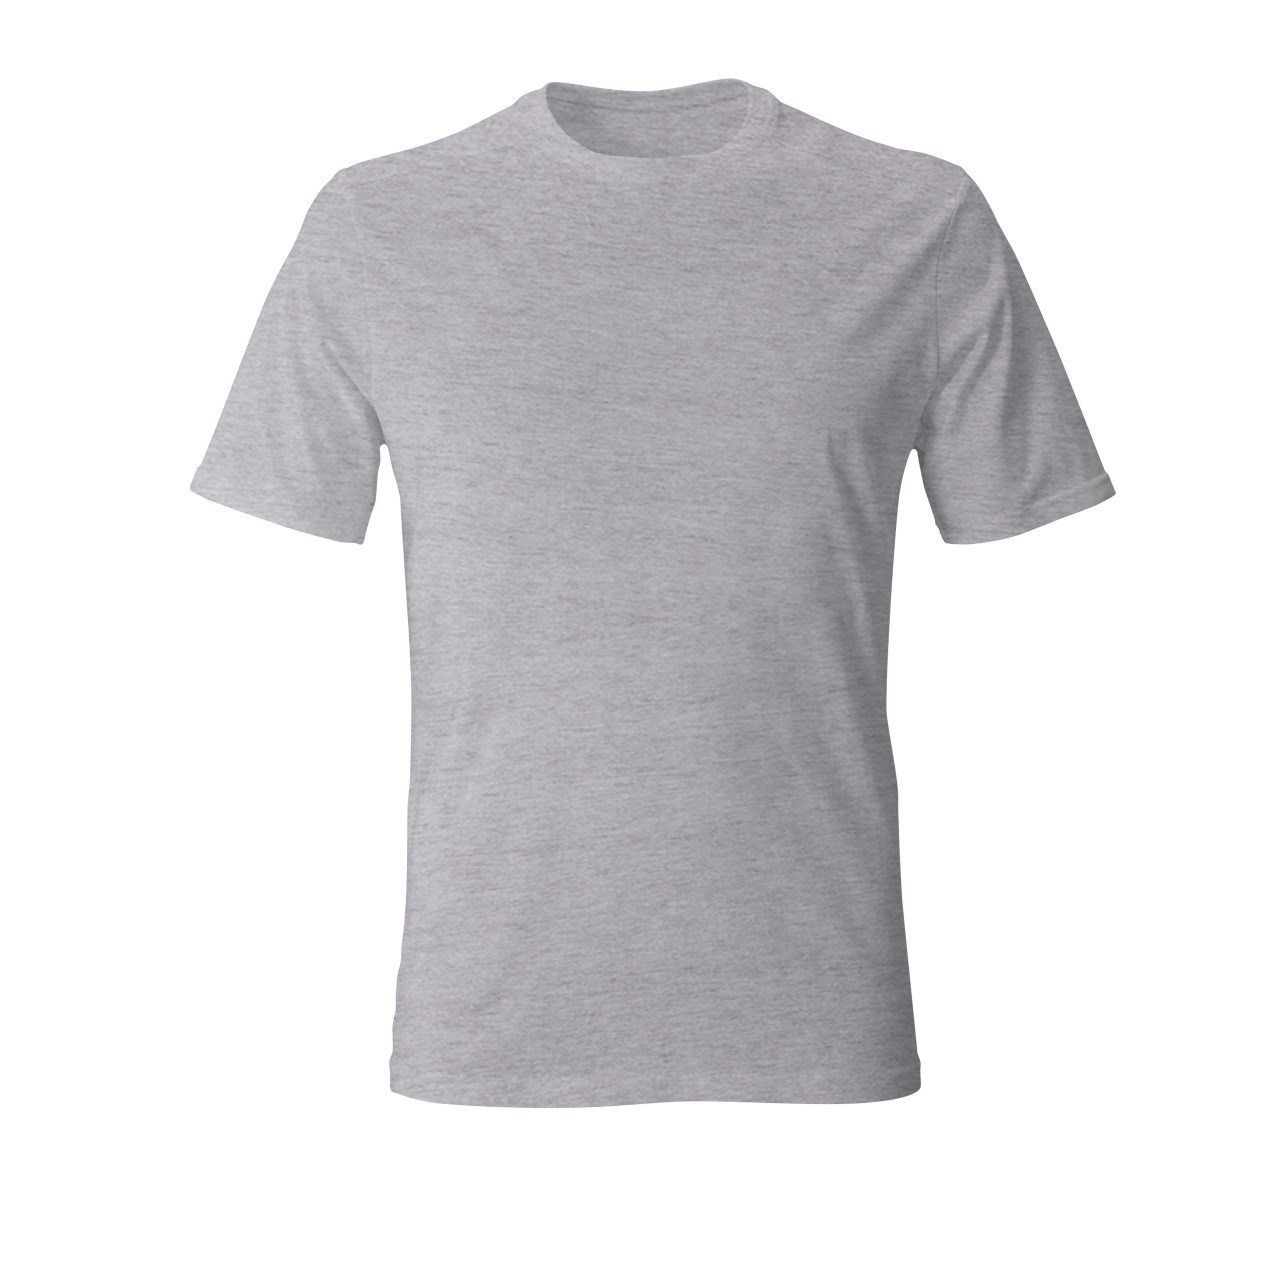 قیمت تی شرت ساده مردانه کد 12